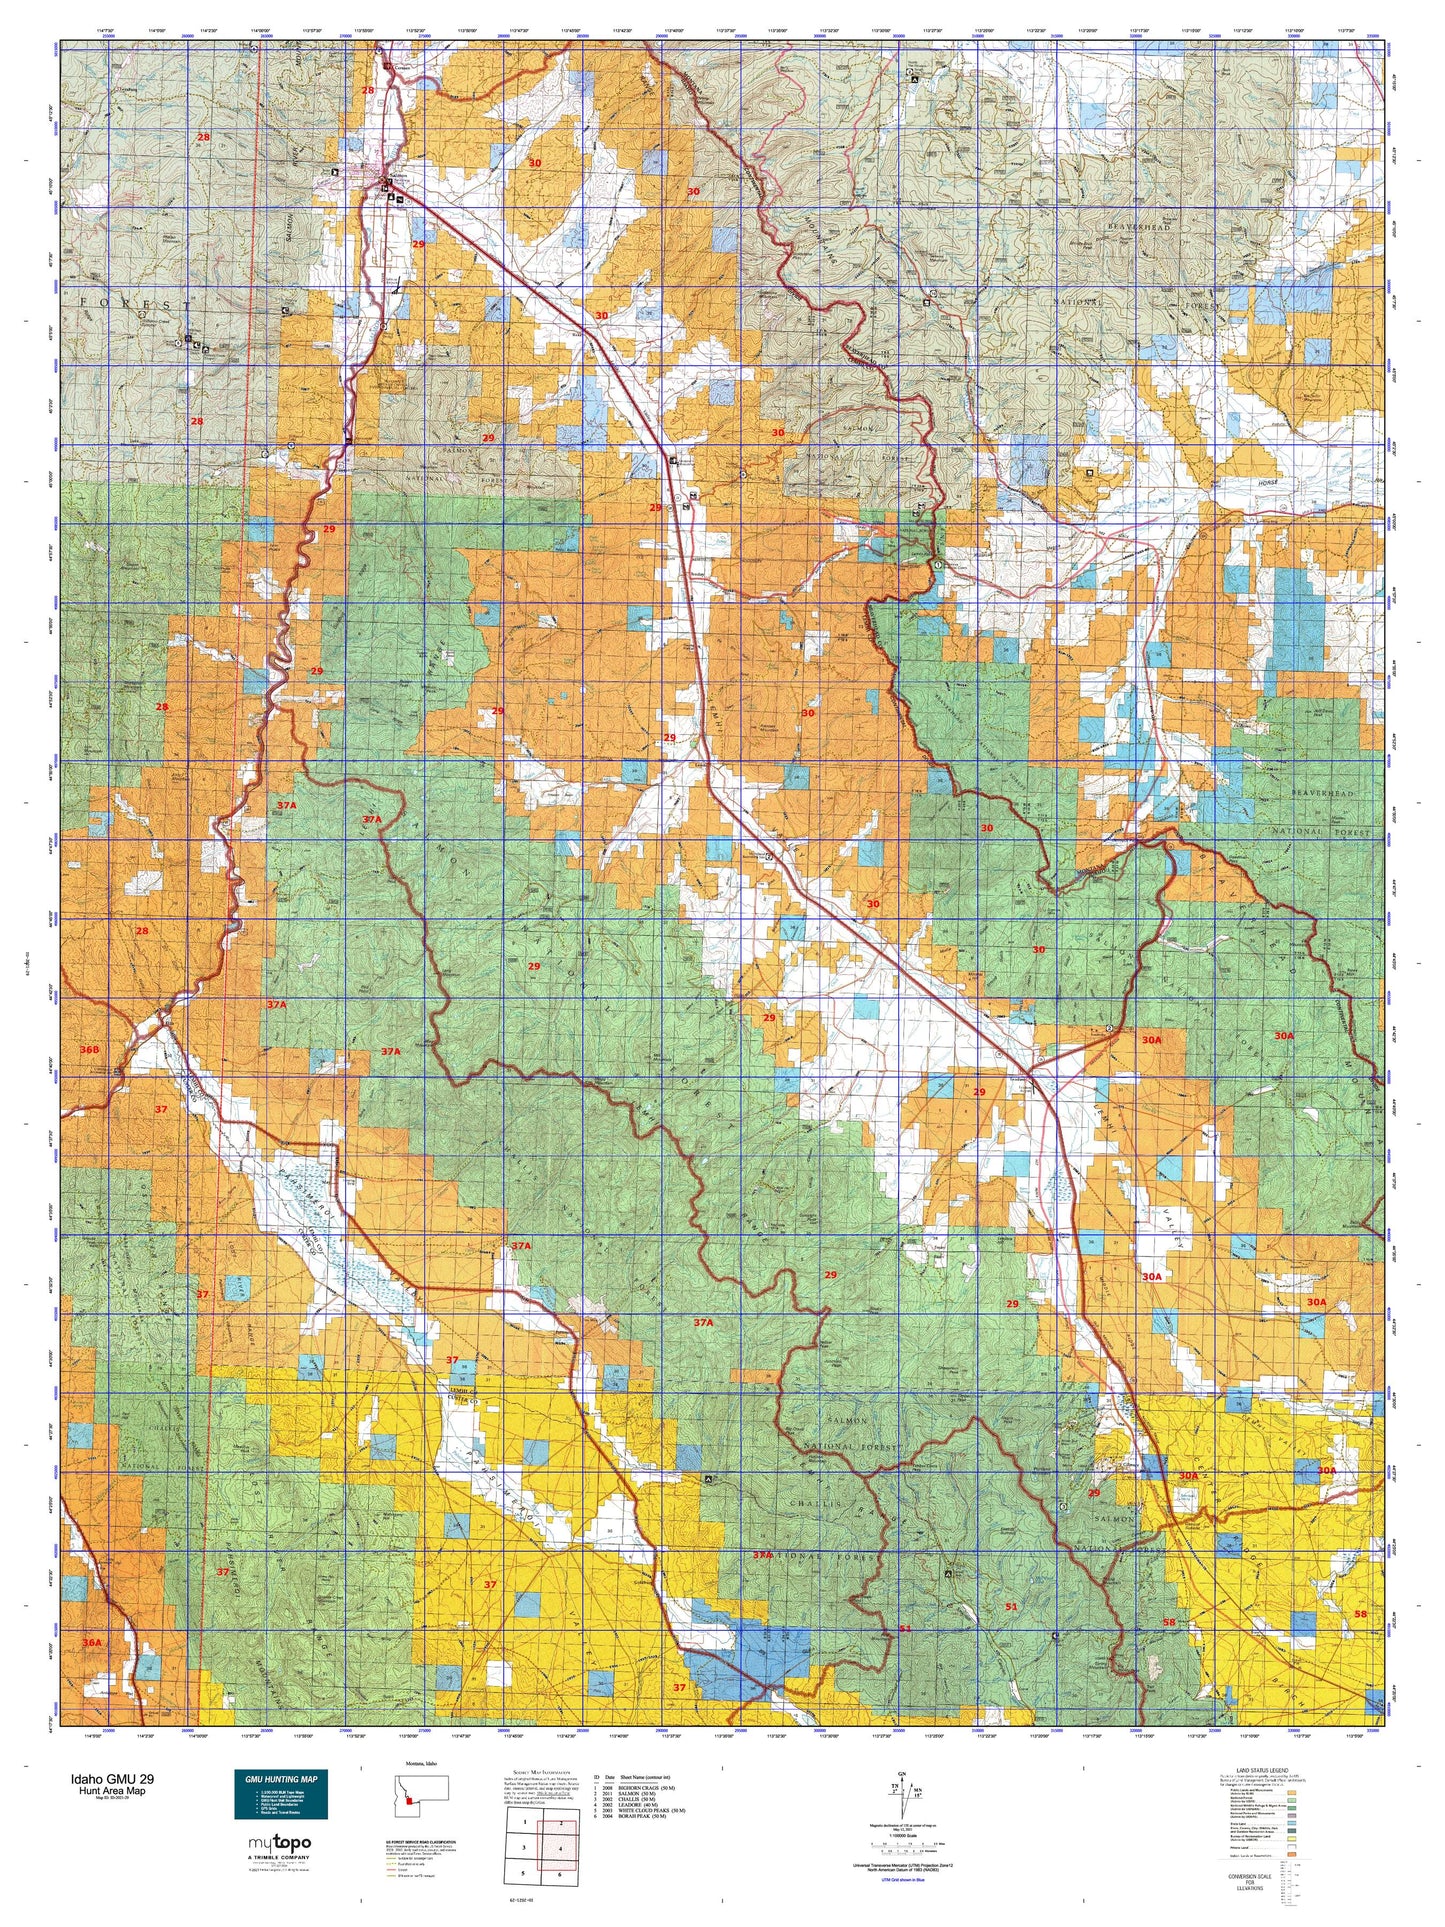 Idaho GMU 29 Map Image